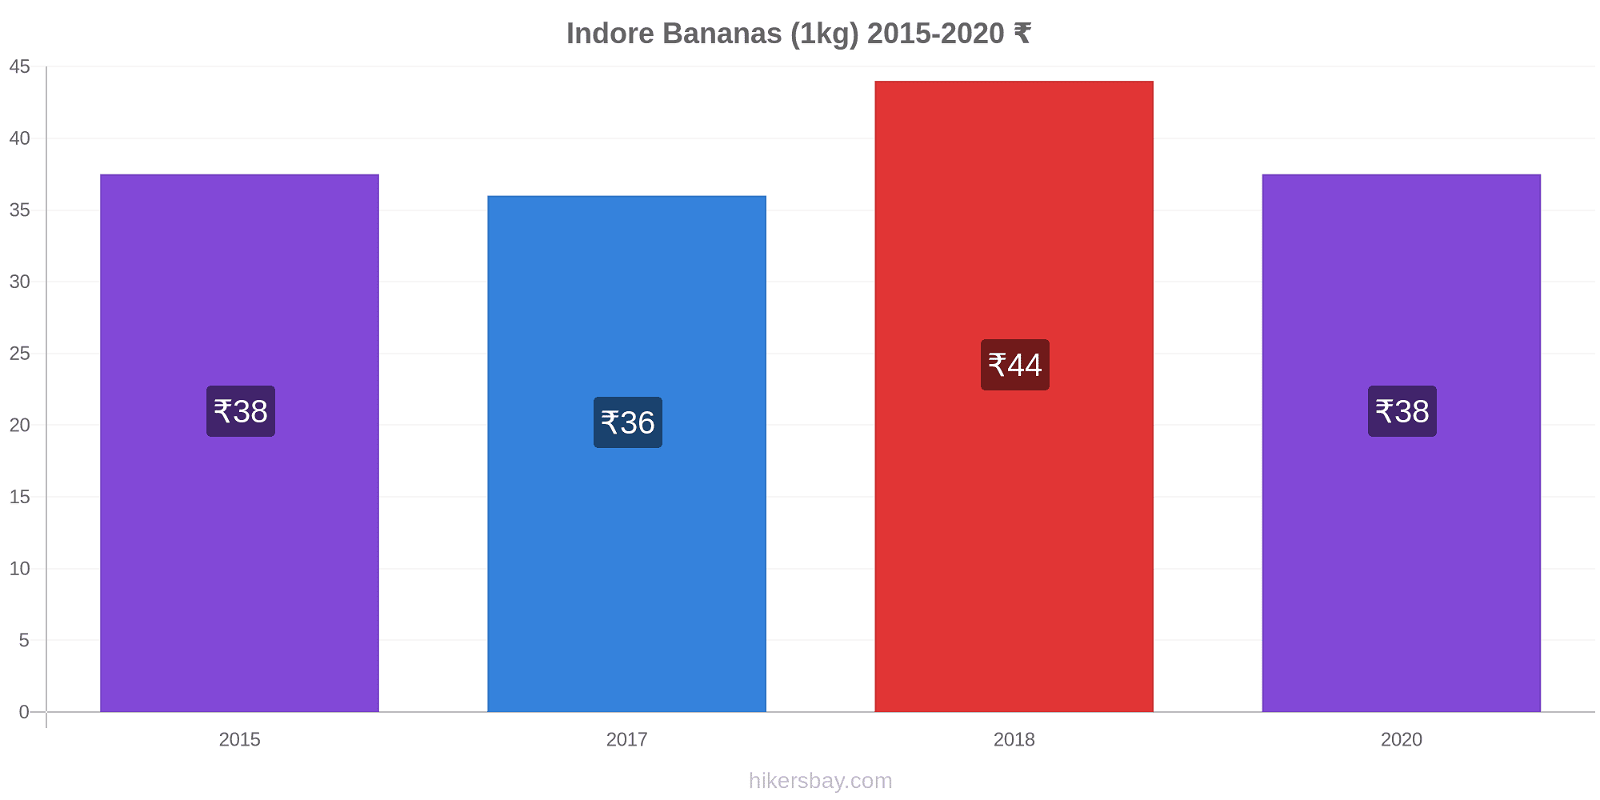 Indore variação de preço Banana (1kg) hikersbay.com